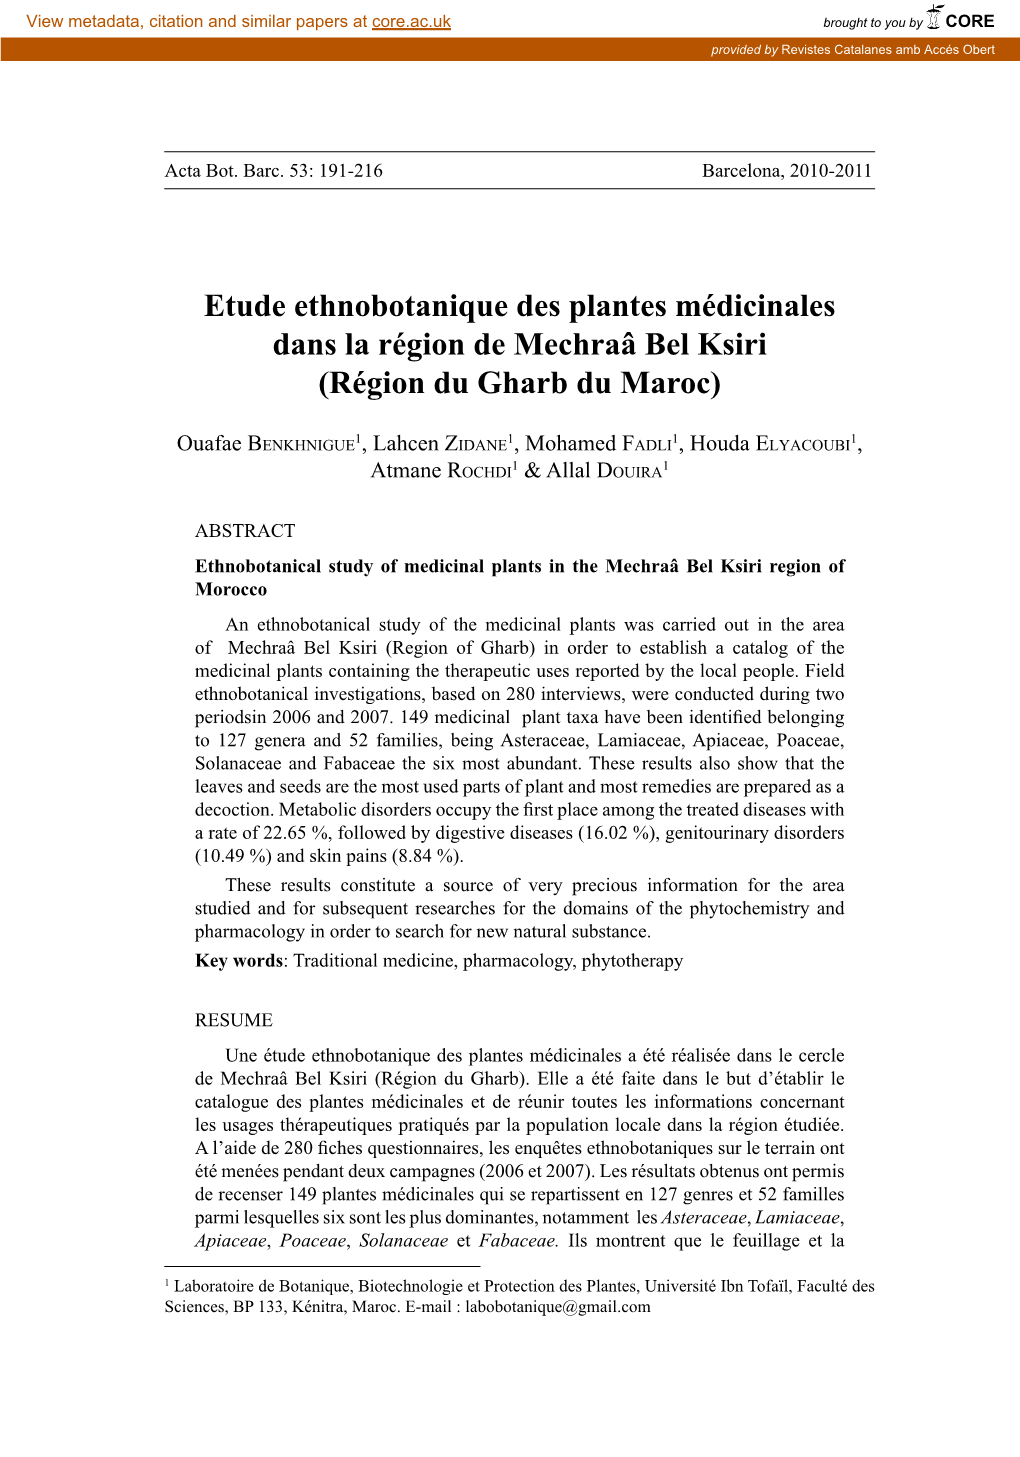 Etude Ethnobotanique Des Plantes Médicinales Dans La Région De Mechraâ Bel Ksiri (Région Du Gharb Du Maroc)